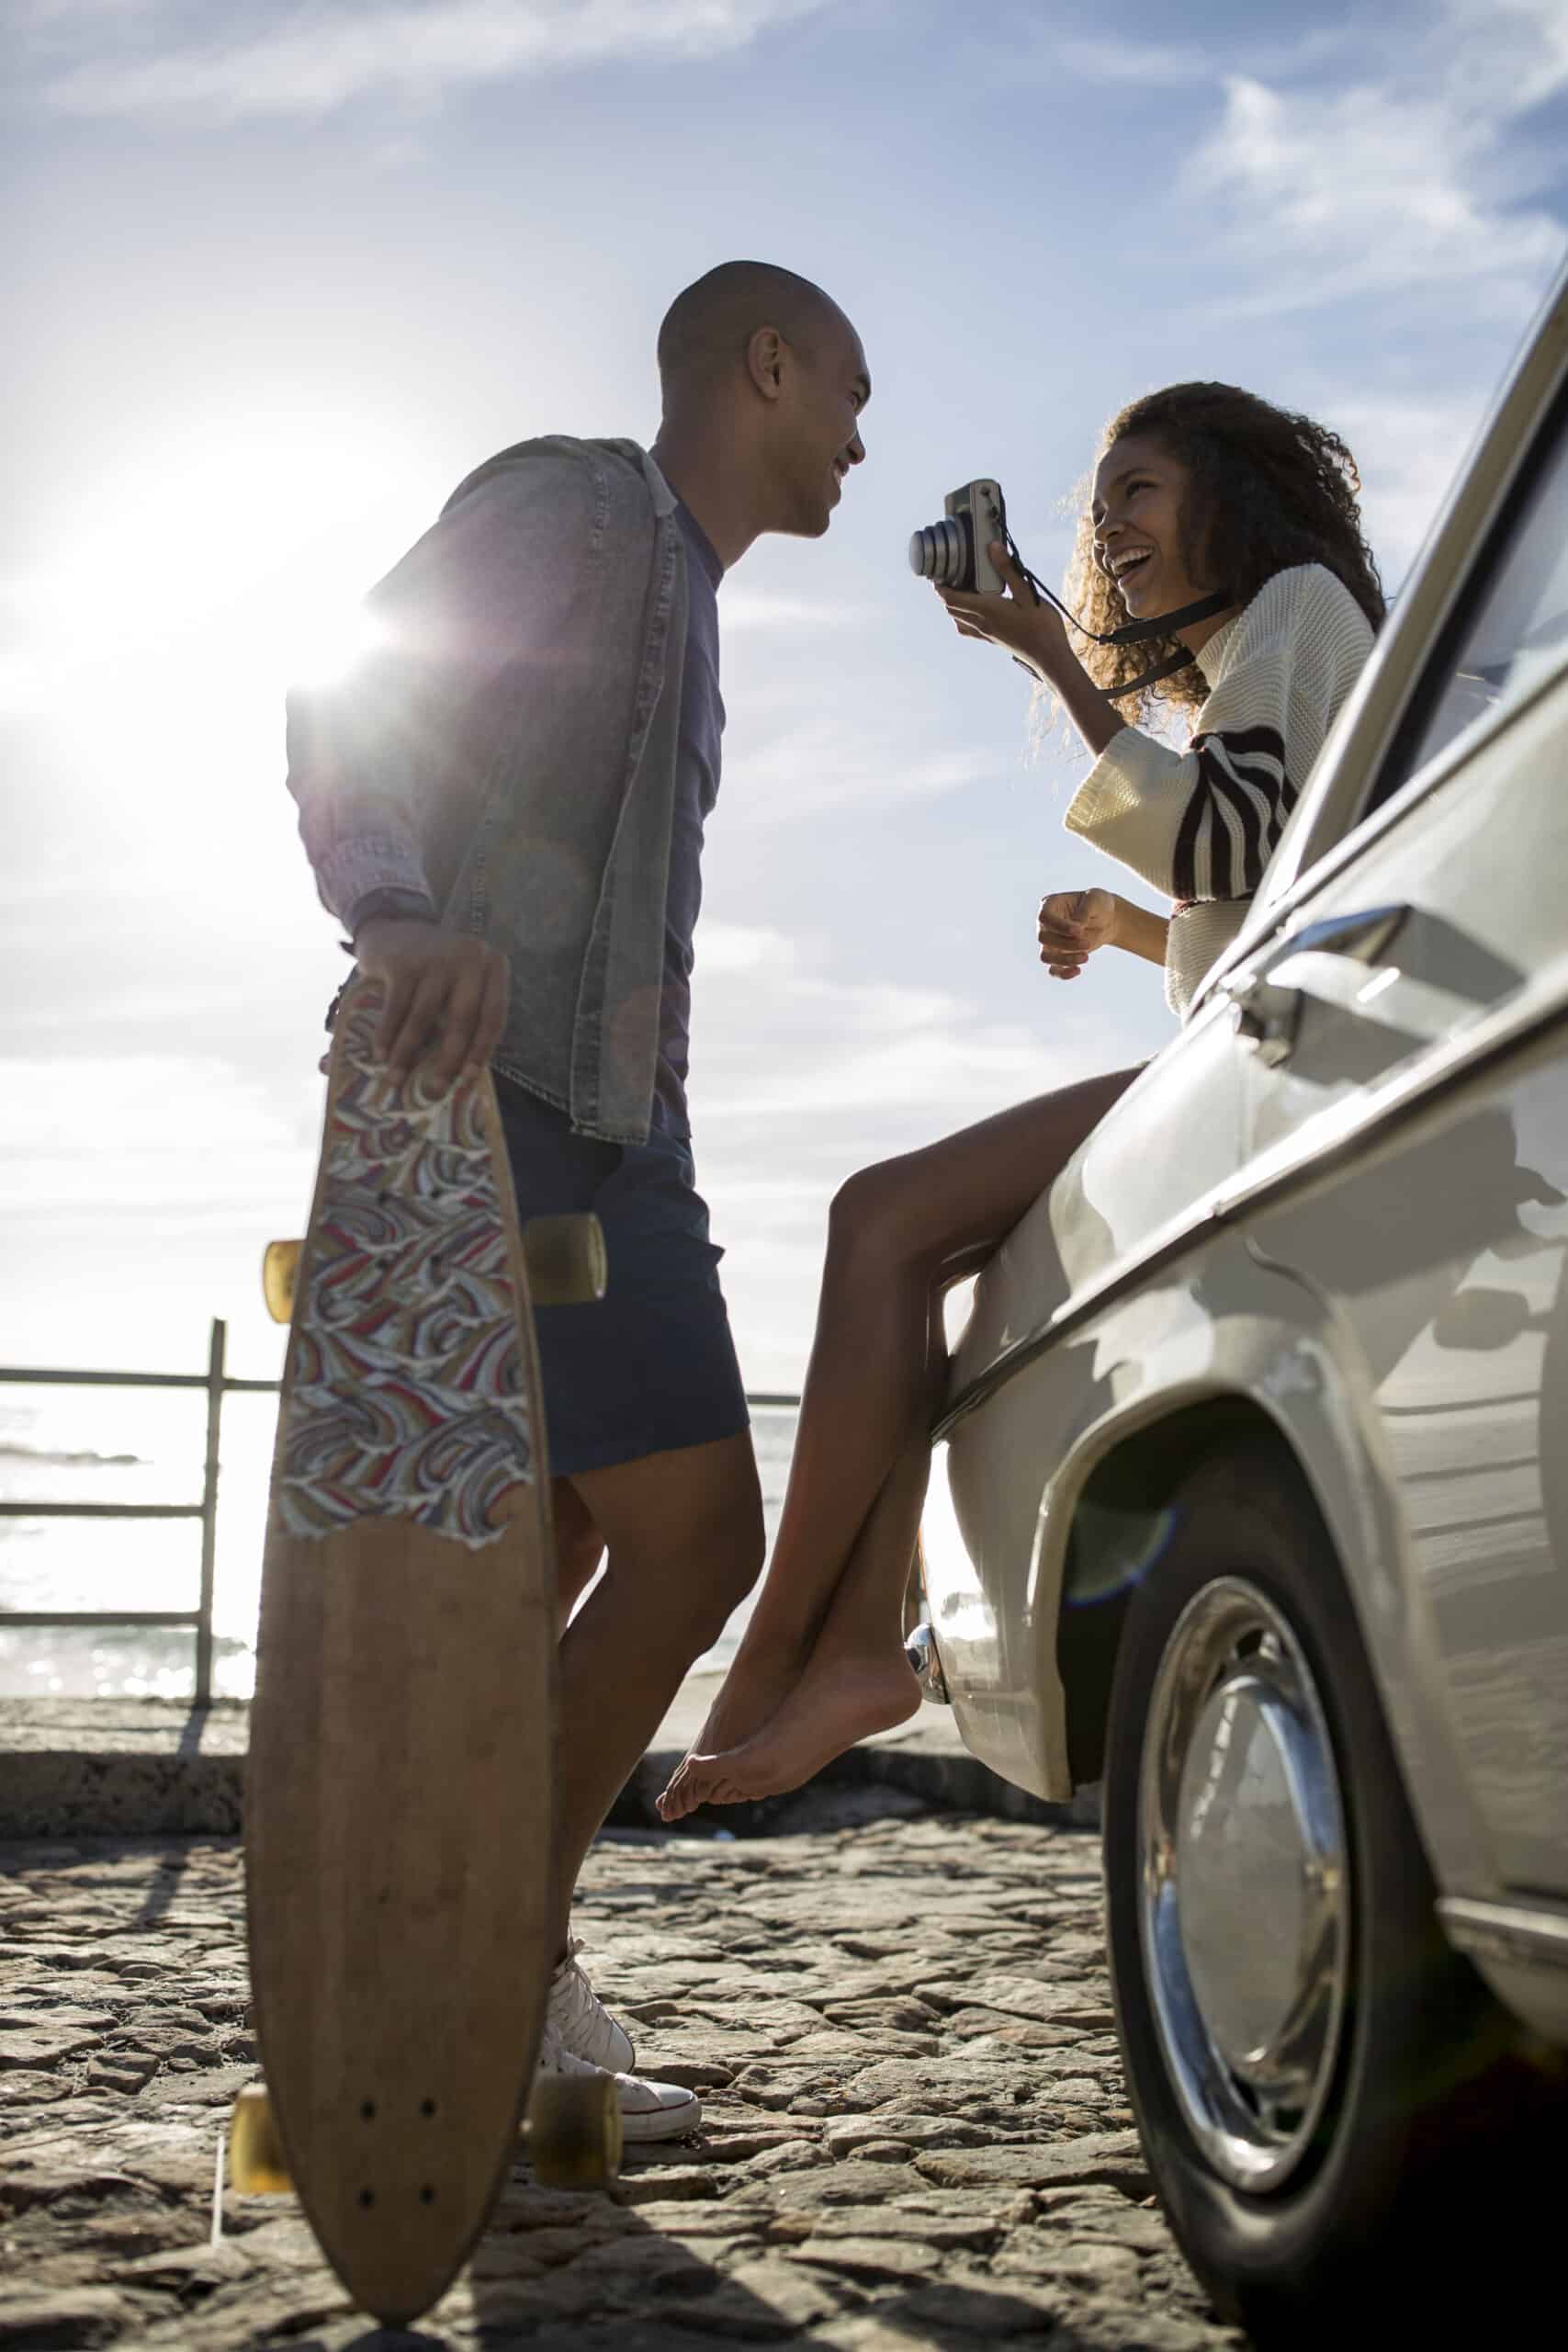 Ein fröhliches Paar genießt einen sonnigen Tag am Meer; die Frau sitzt mit einer Kamera in der Hand auf der Motorhaube eines Autos, während der Mann mit einem Skateboard daneben steht und sich fröhlich unterhält. © Fotografie Tomas Rodriguez